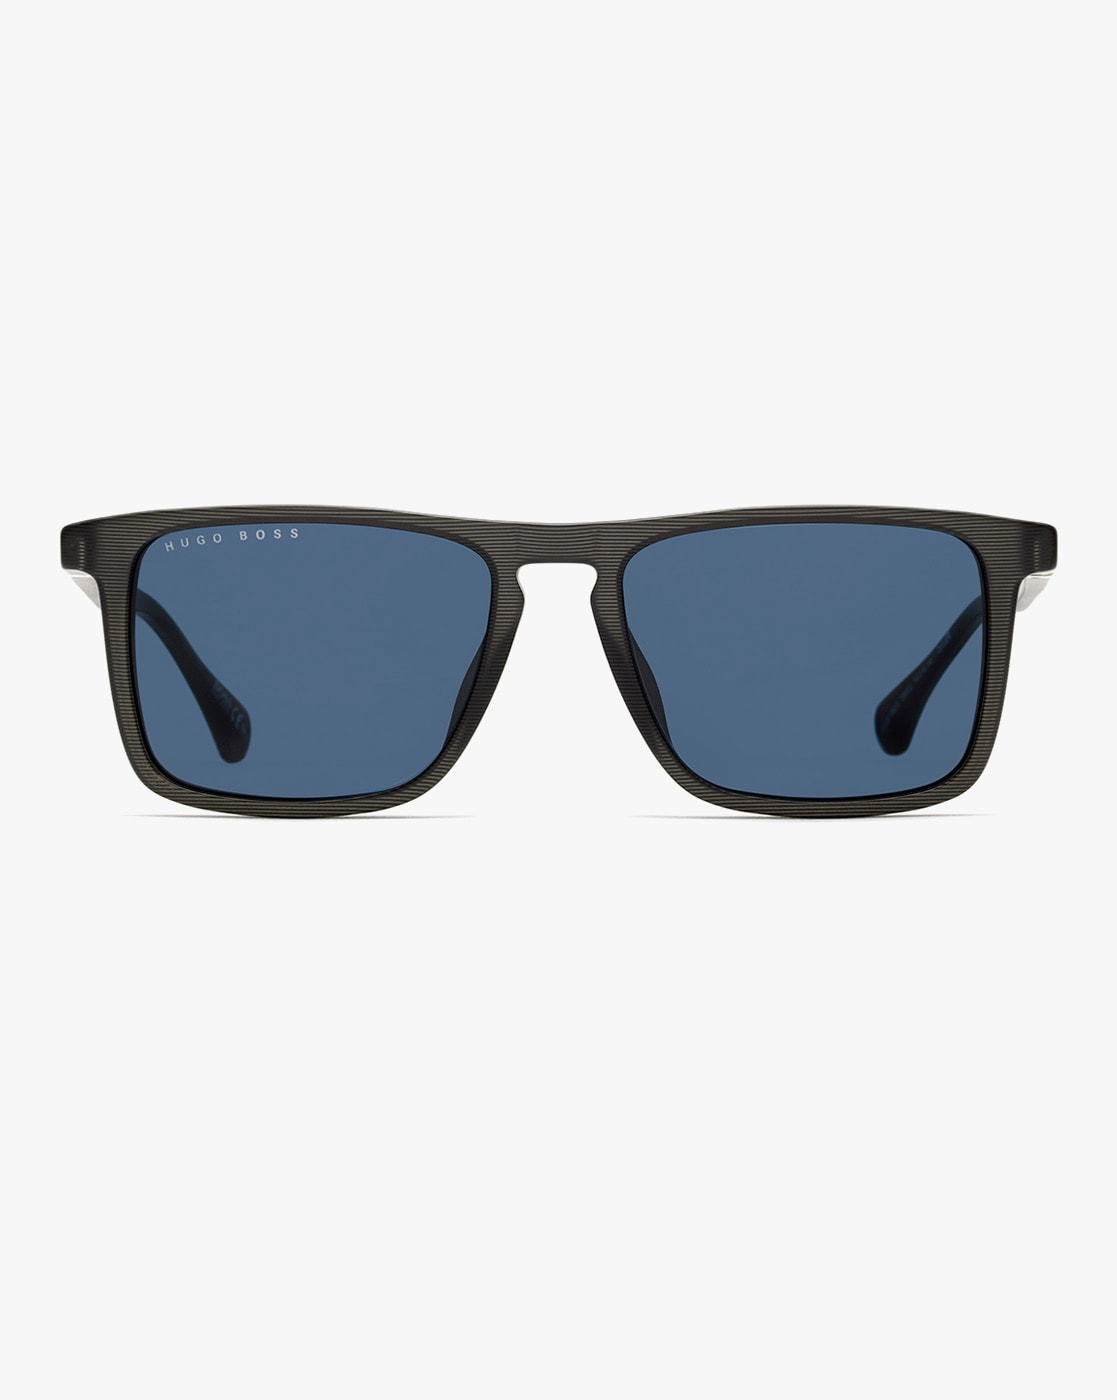 NEW Hugo Boss Frames 2022 - Clubmaster, Only Better | Optical + Sunglasses  - YouTube